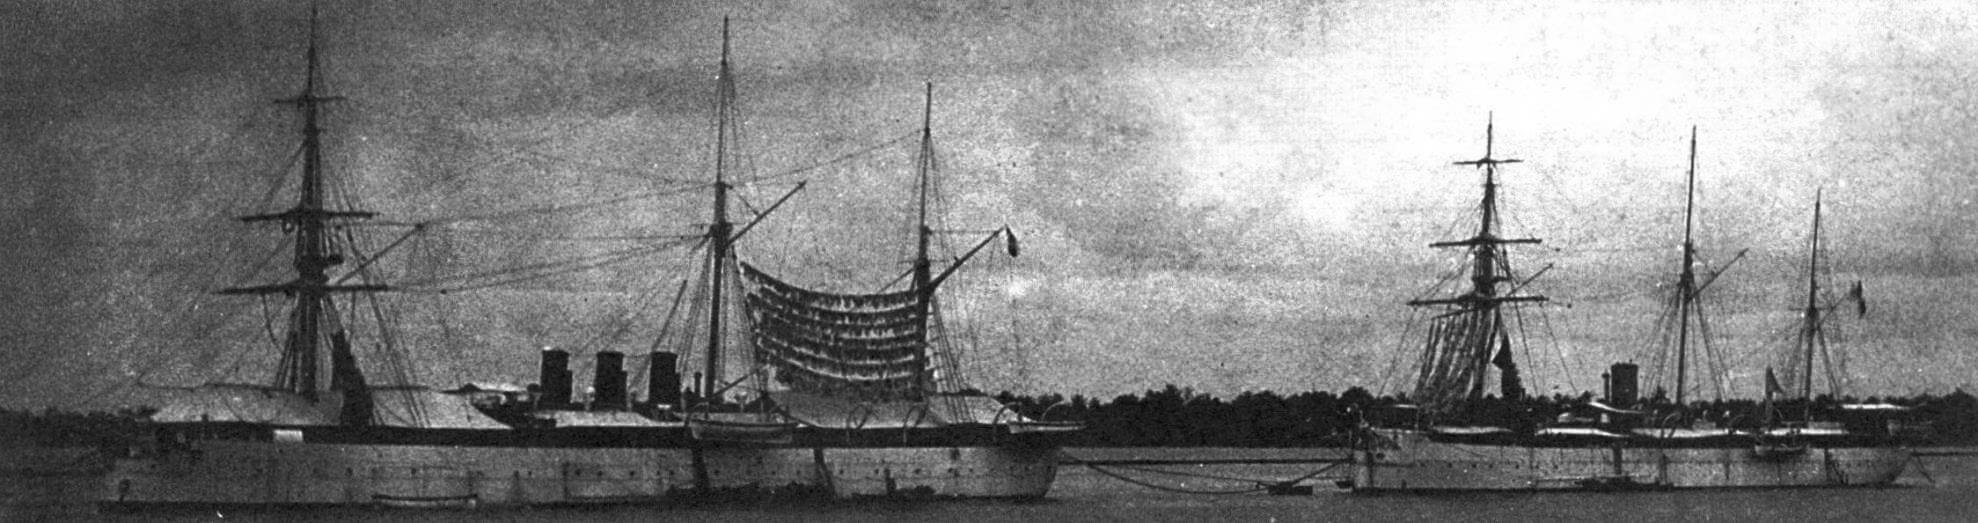 Броненосцы «Конинг дер Недерланден» и «Принс Хендрик» на рейде Сурабайи (Голландская Ост-Индия) в 1887 году